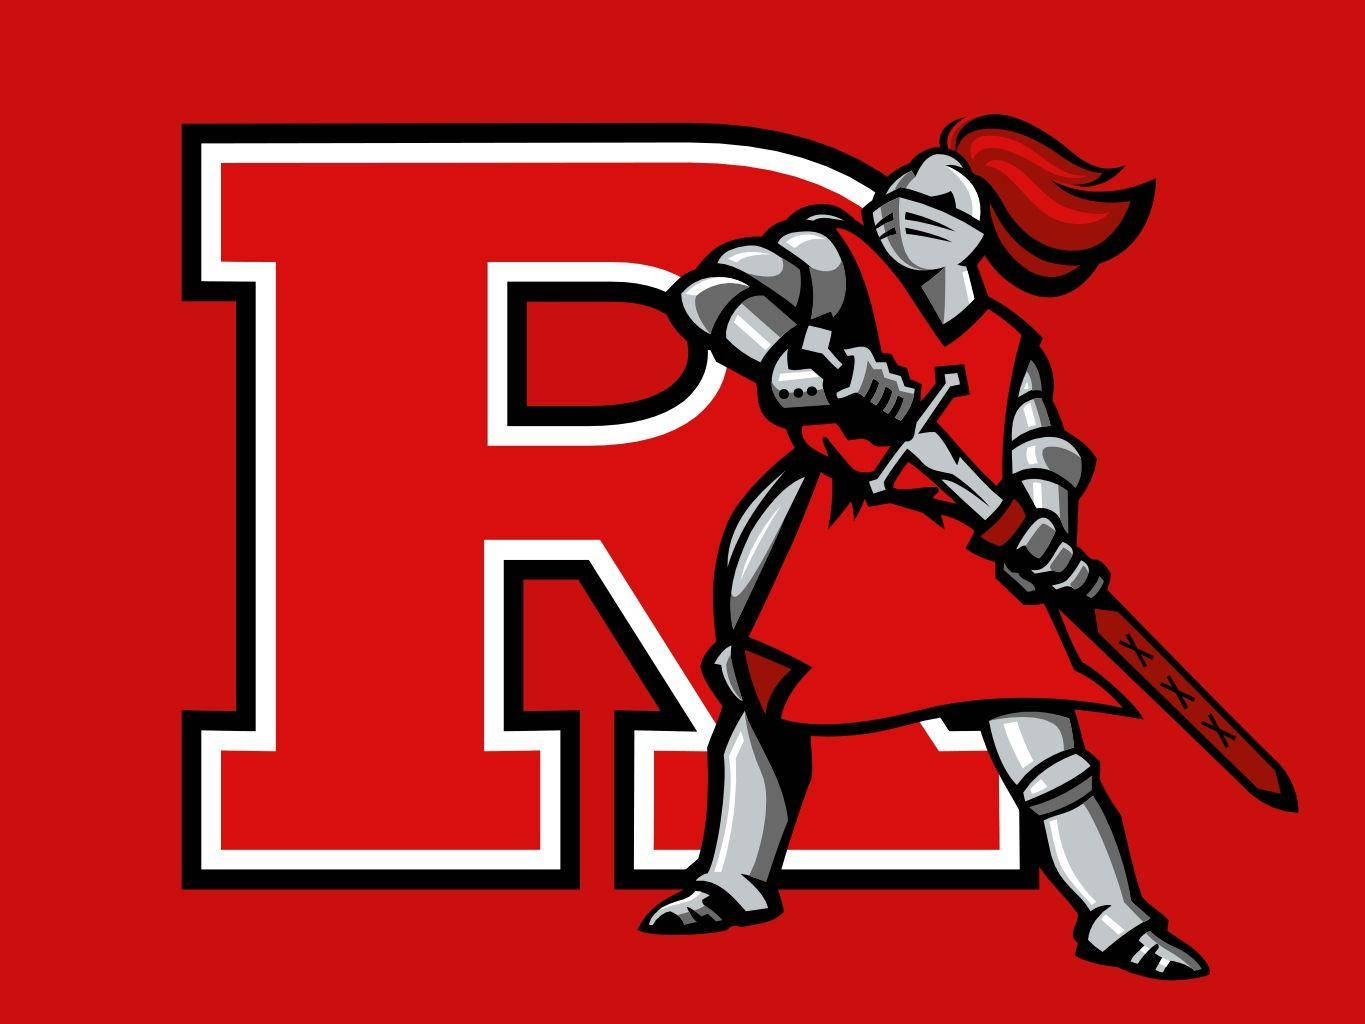 Rutgersausführliches Ritter-logo Wallpaper